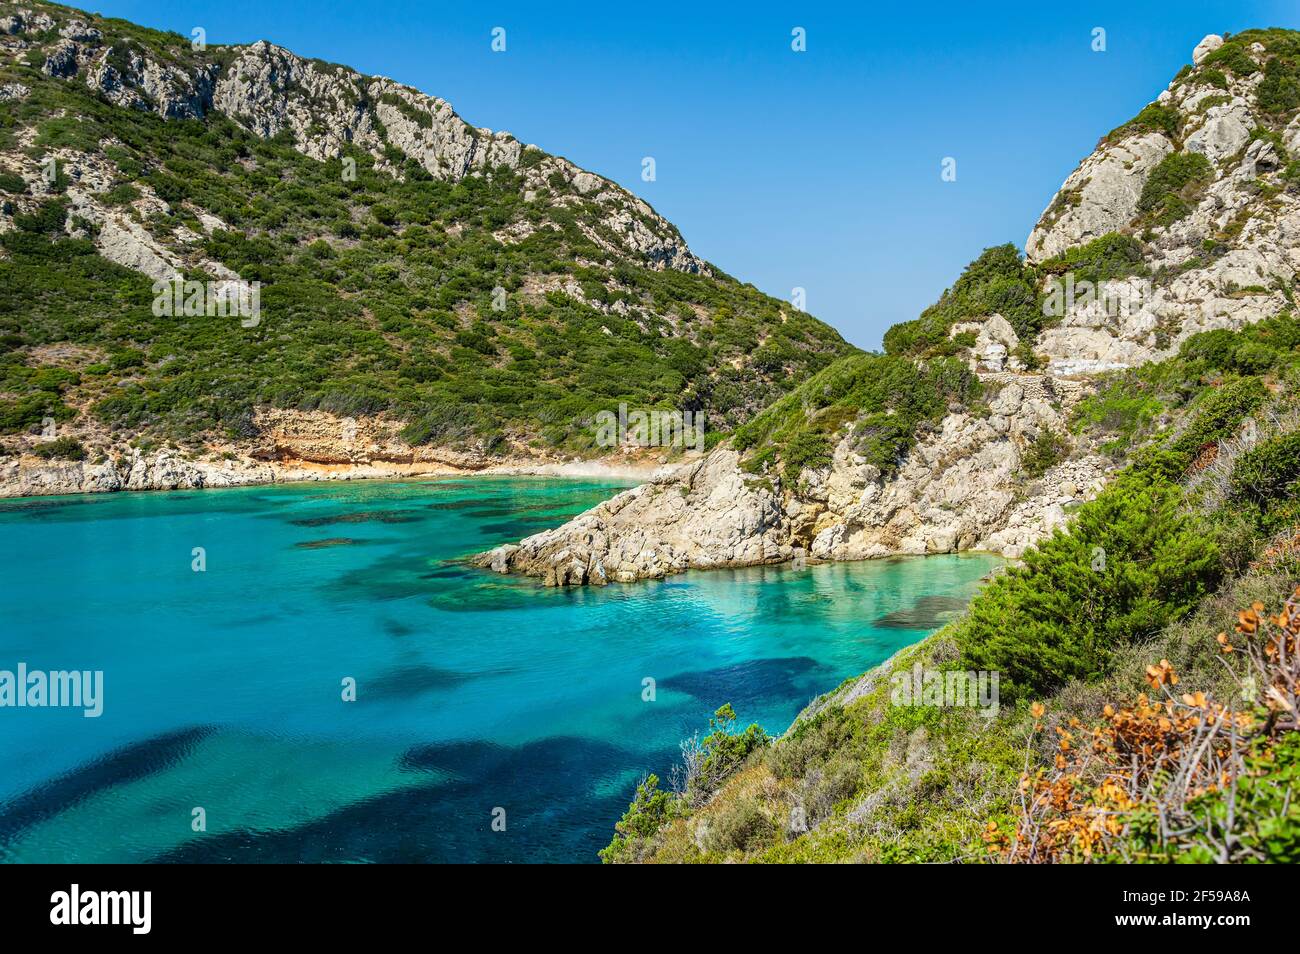 Porto Timoni Strand auf Korfu Insel in Griechenland. Schöne Aussicht auf grüne Berge, klares Meerwasser, abgeschiedene Pirates Bay und versteckten steinigen Strand. Berühmt Stockfoto